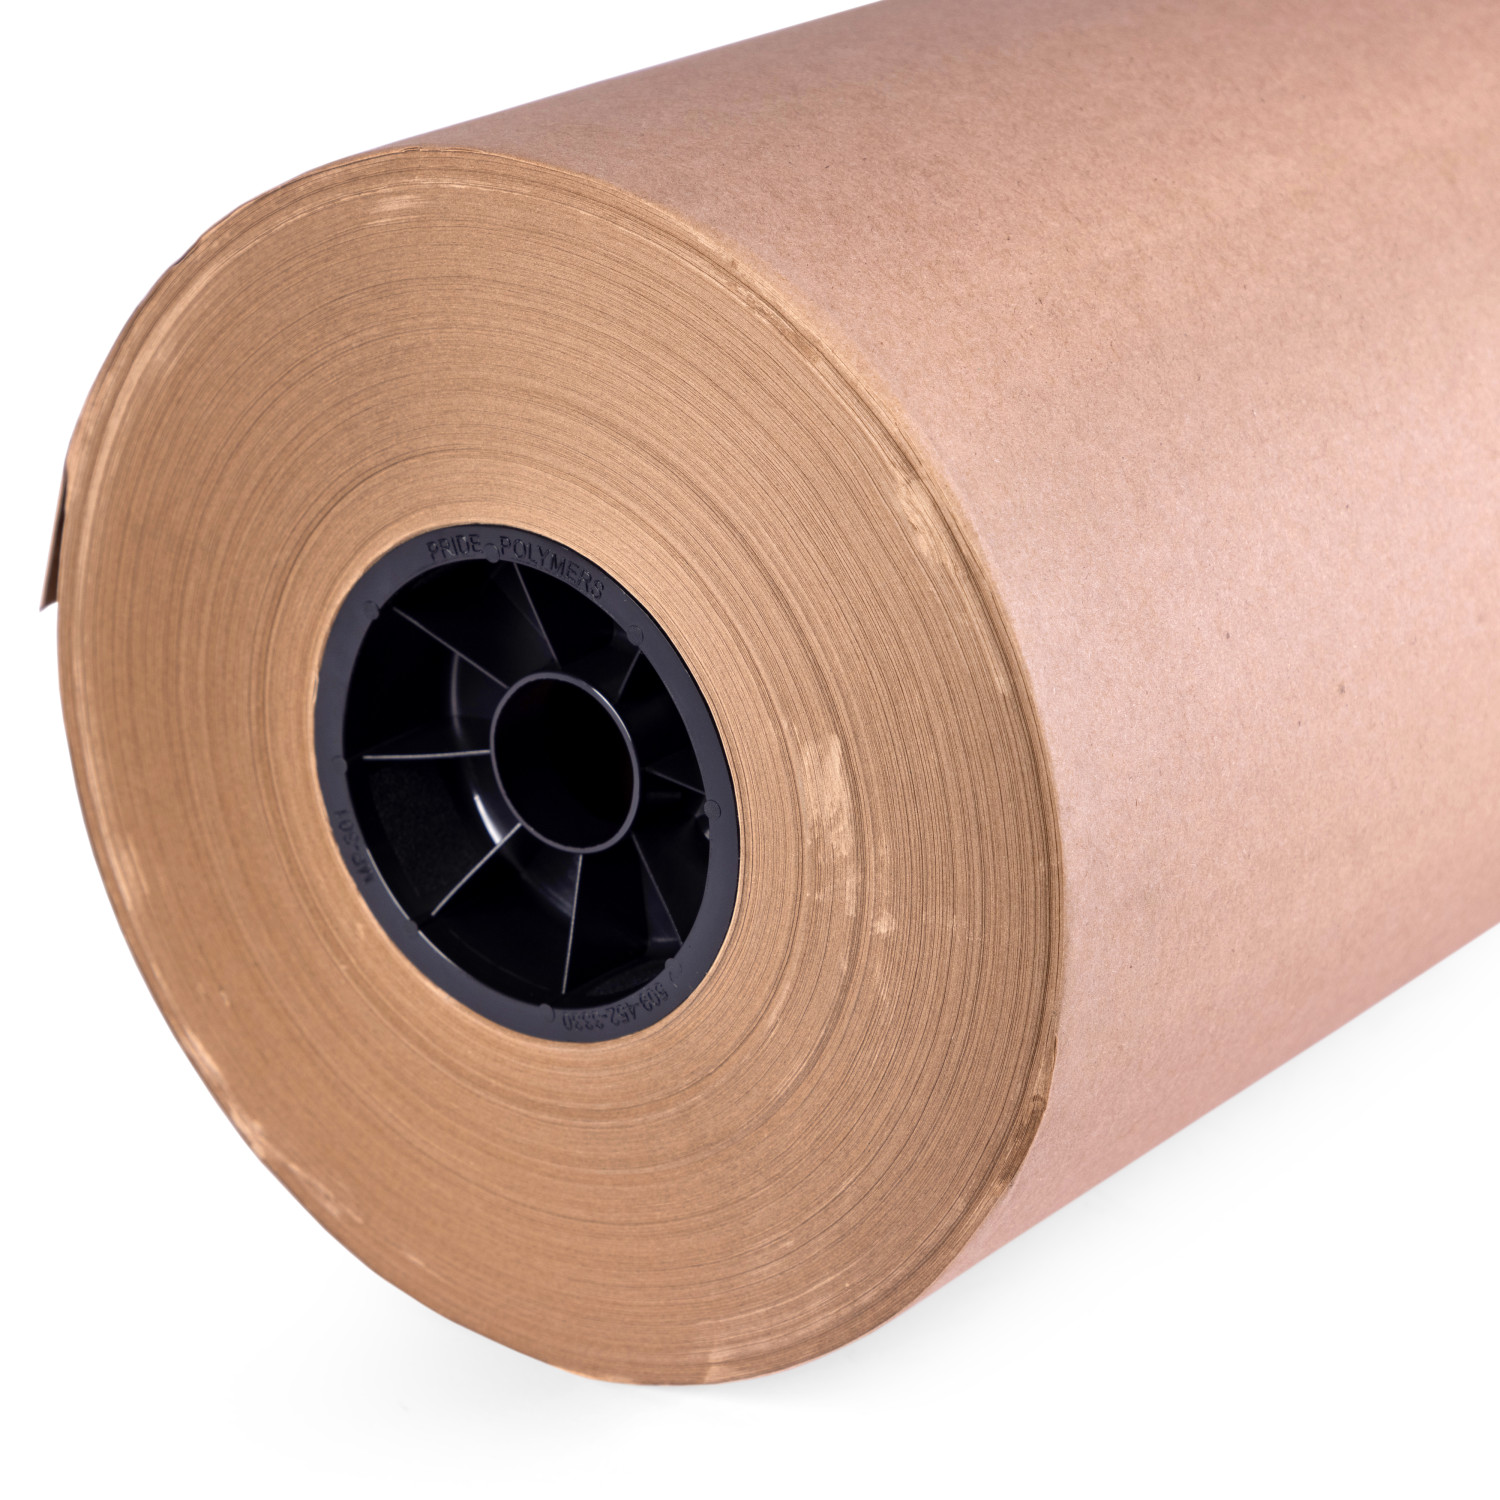 48 x 180' Brown Kraft Paper Roll, 30 lbs buy in stock in U.S. in IDL  Packaging